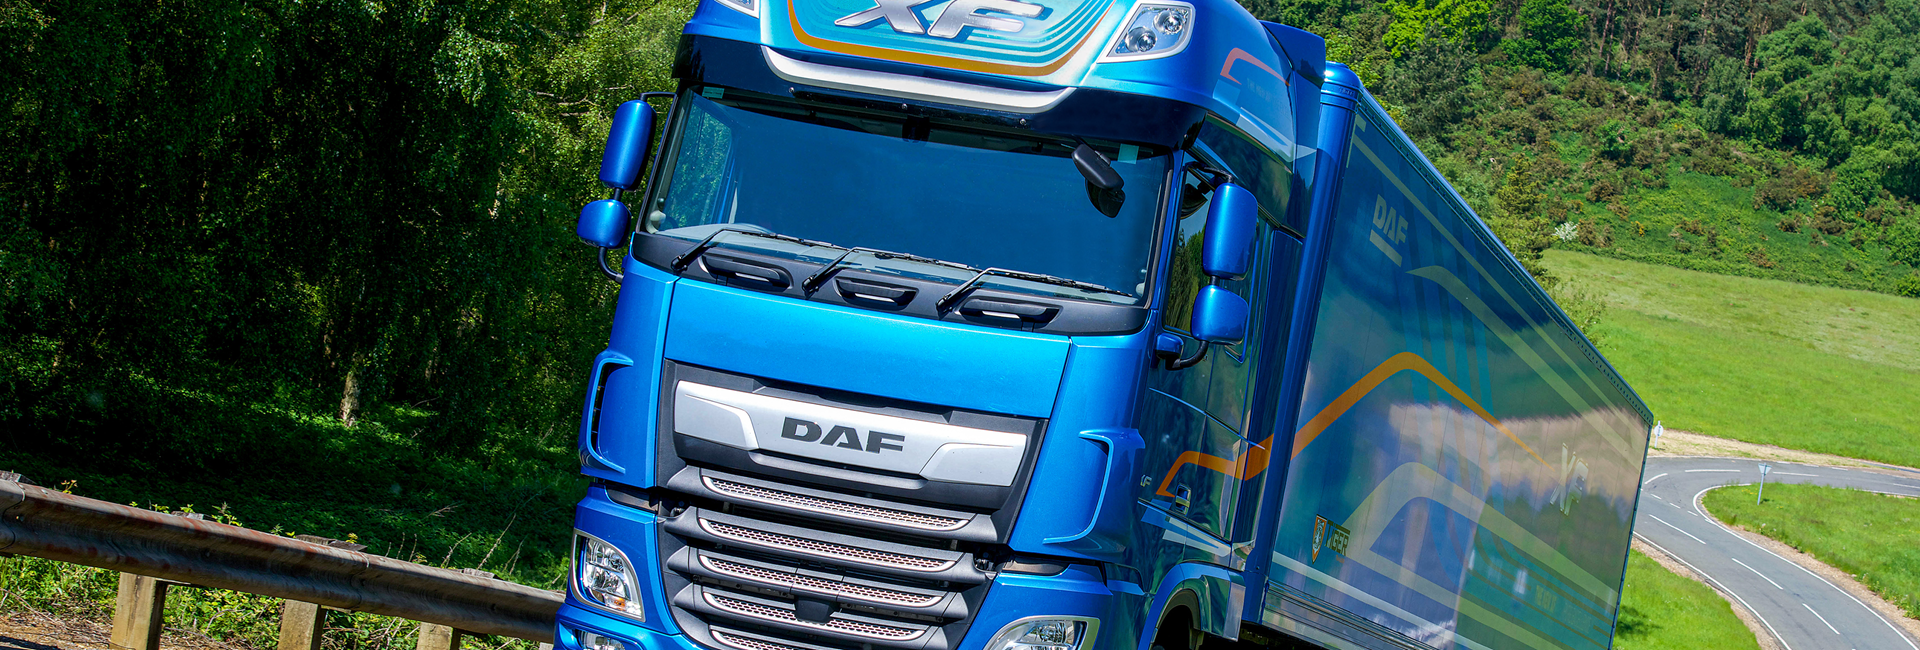 Caminhão DAF XF ganha prêmio Caminhão de Frota do Ano 2021 no Reino Unido